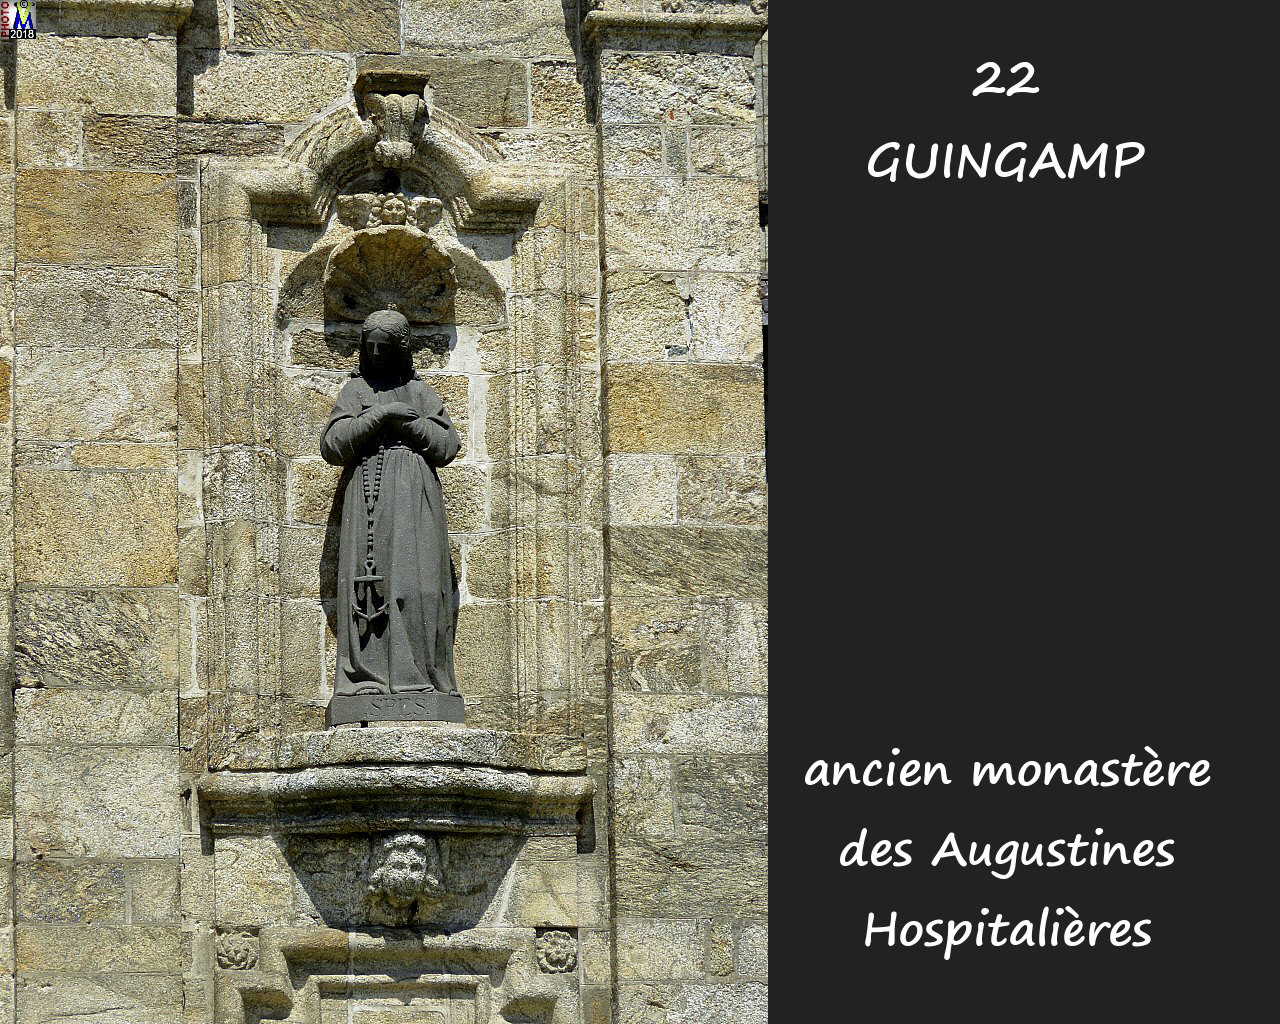 22GUINGAMP_monastereAH_118.jpg